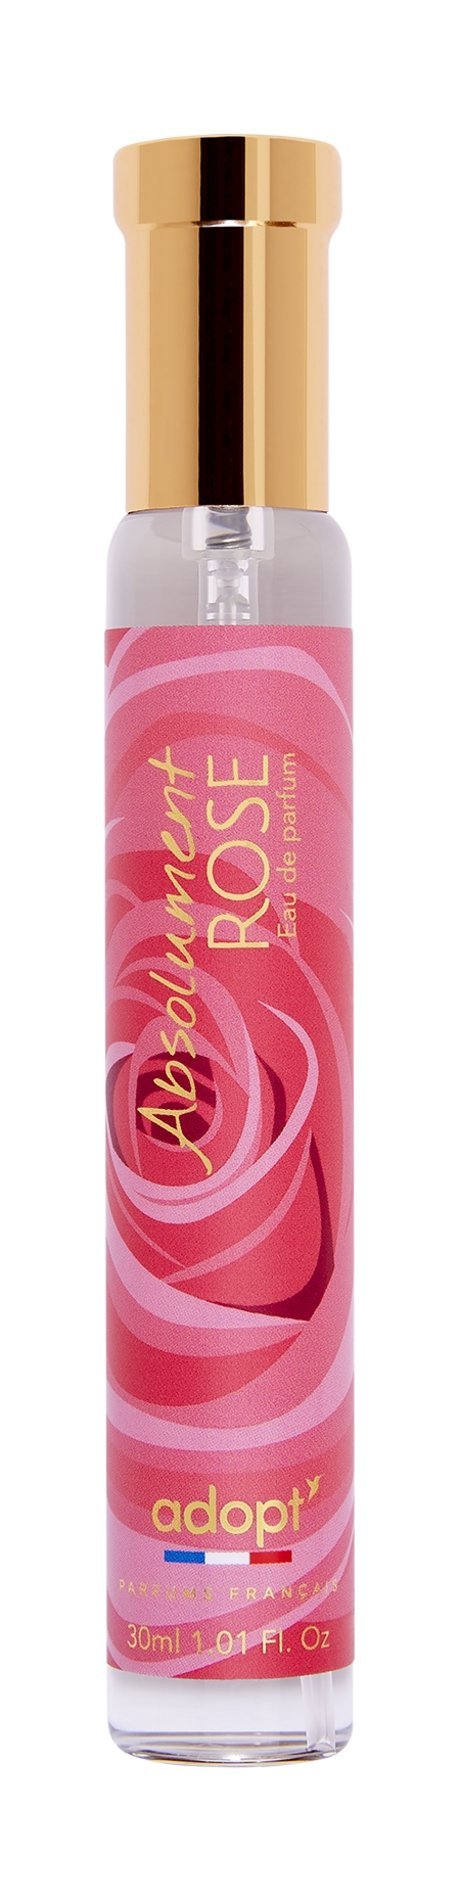 Adopt' Absolument Rose Eau de Parfum